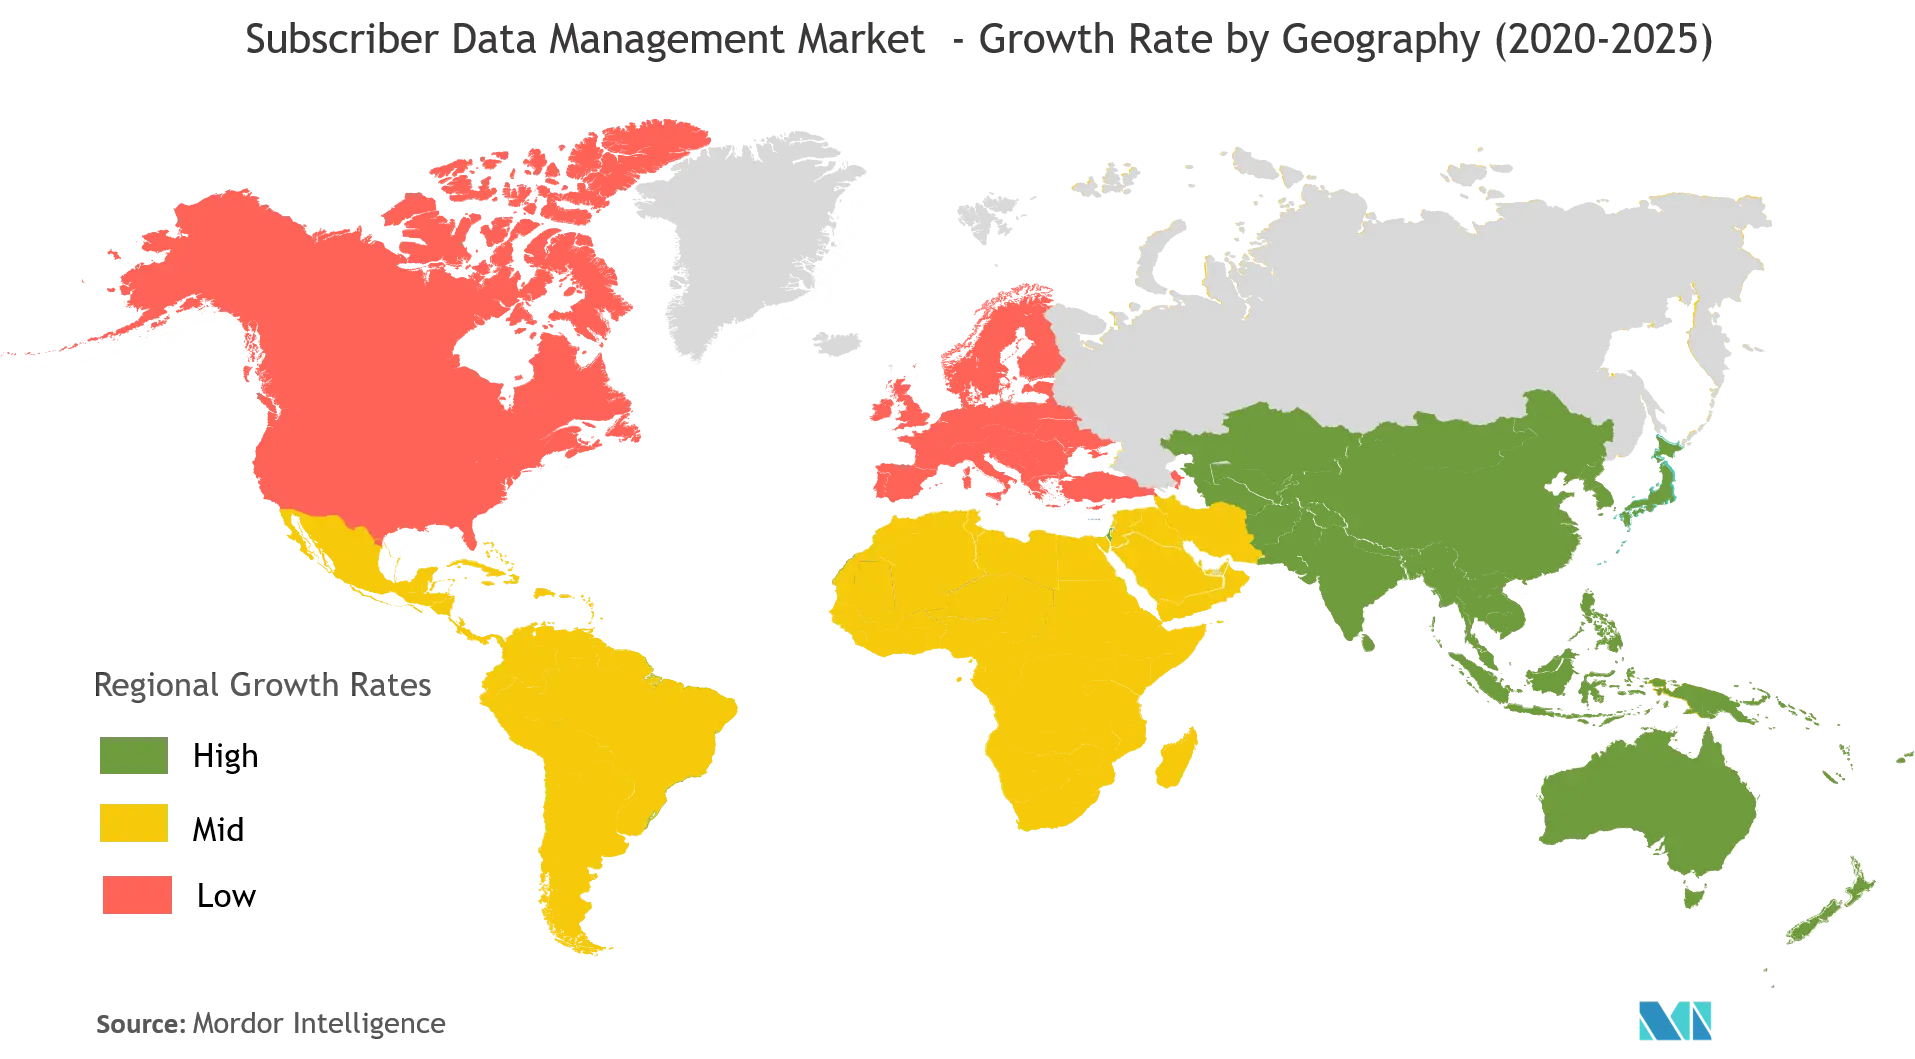 Thị trường quản lý dữ liệu thuê bao Tốc độ tăng trưởng theo địa lý (2020-2025)